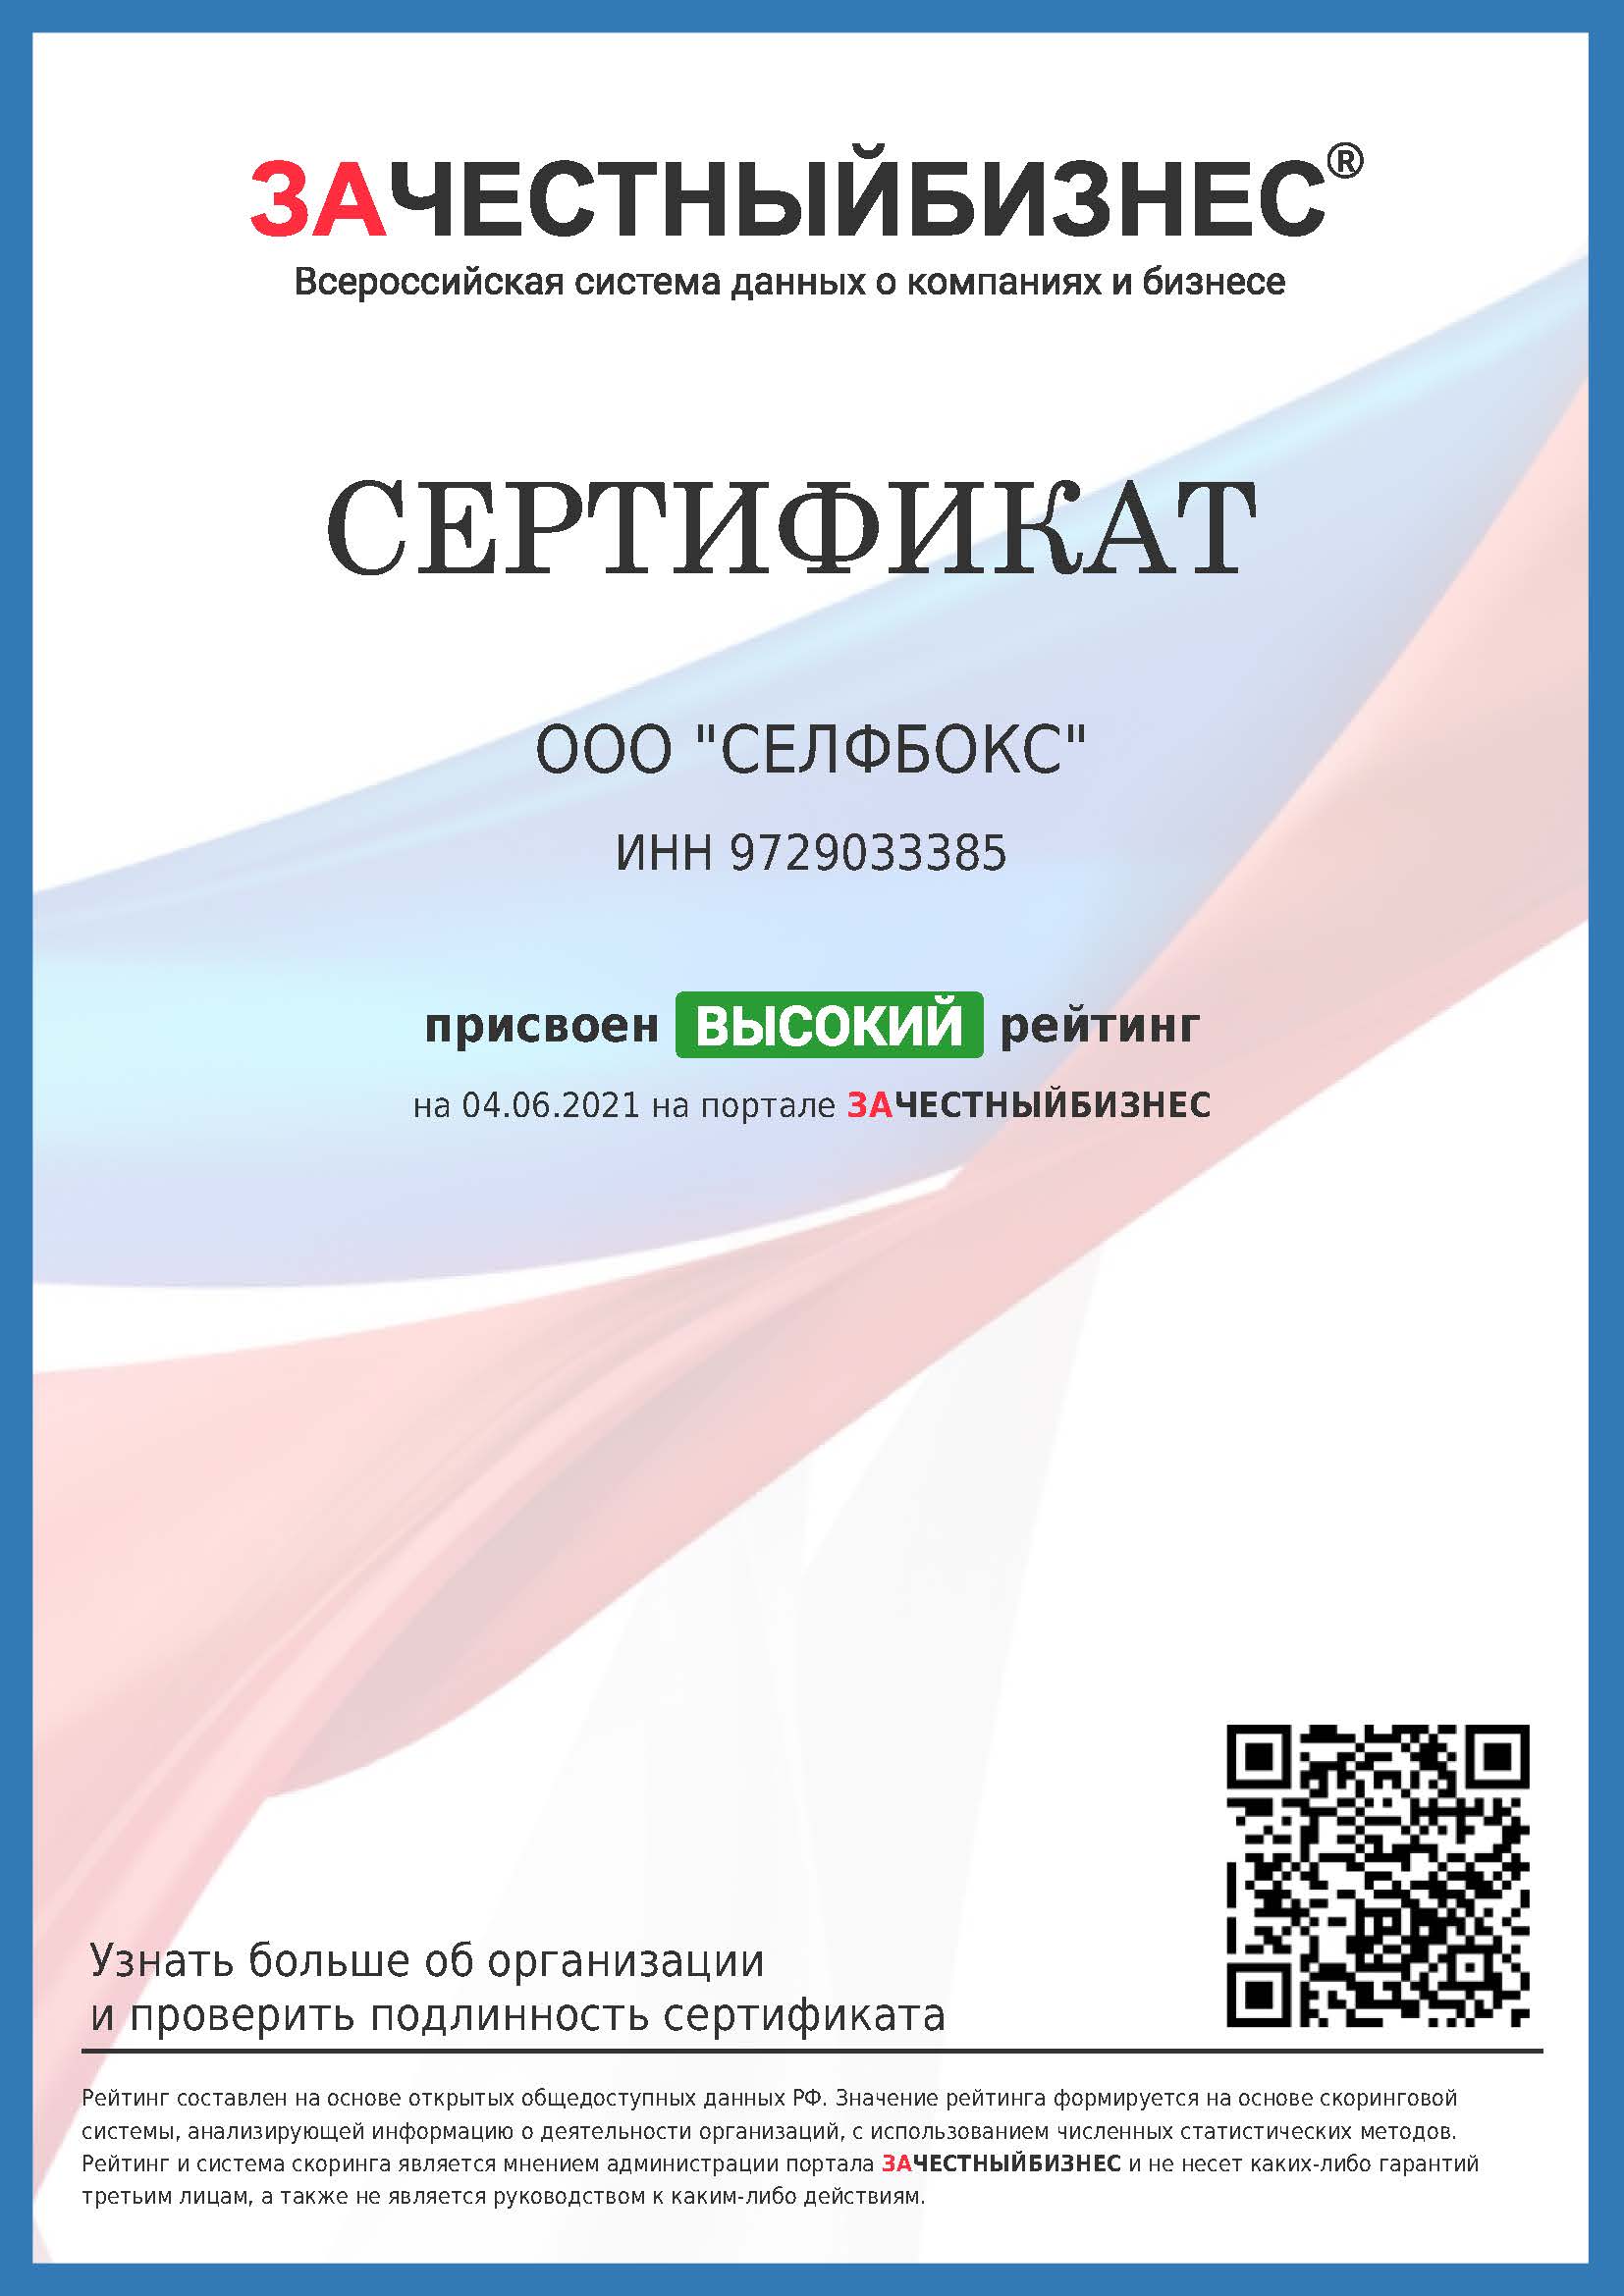 Сертификат о присвоении высокого рейтинга на портале ЗАЧЕСТНЫЙБИЗНЕС